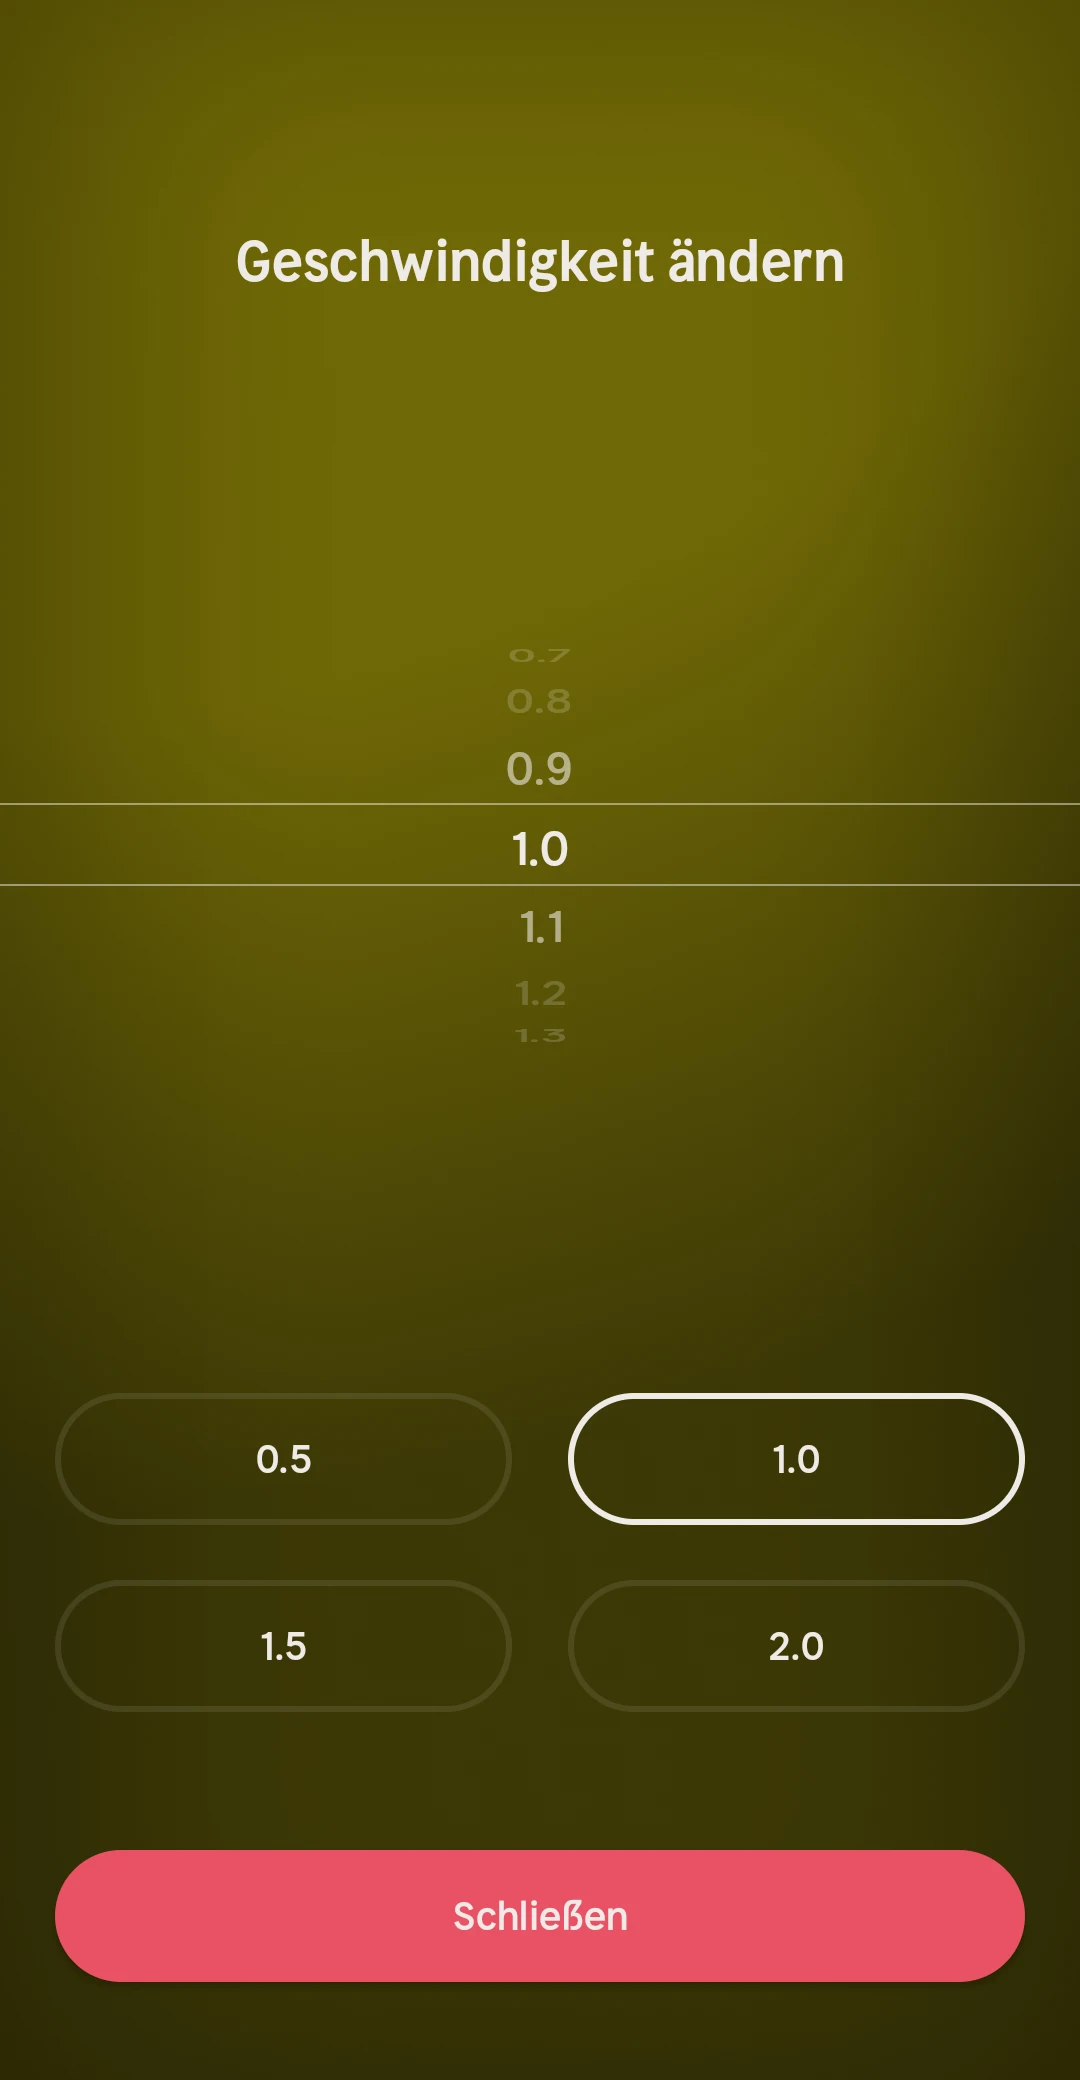 Nextory App: Geschwindigkeit / Speed